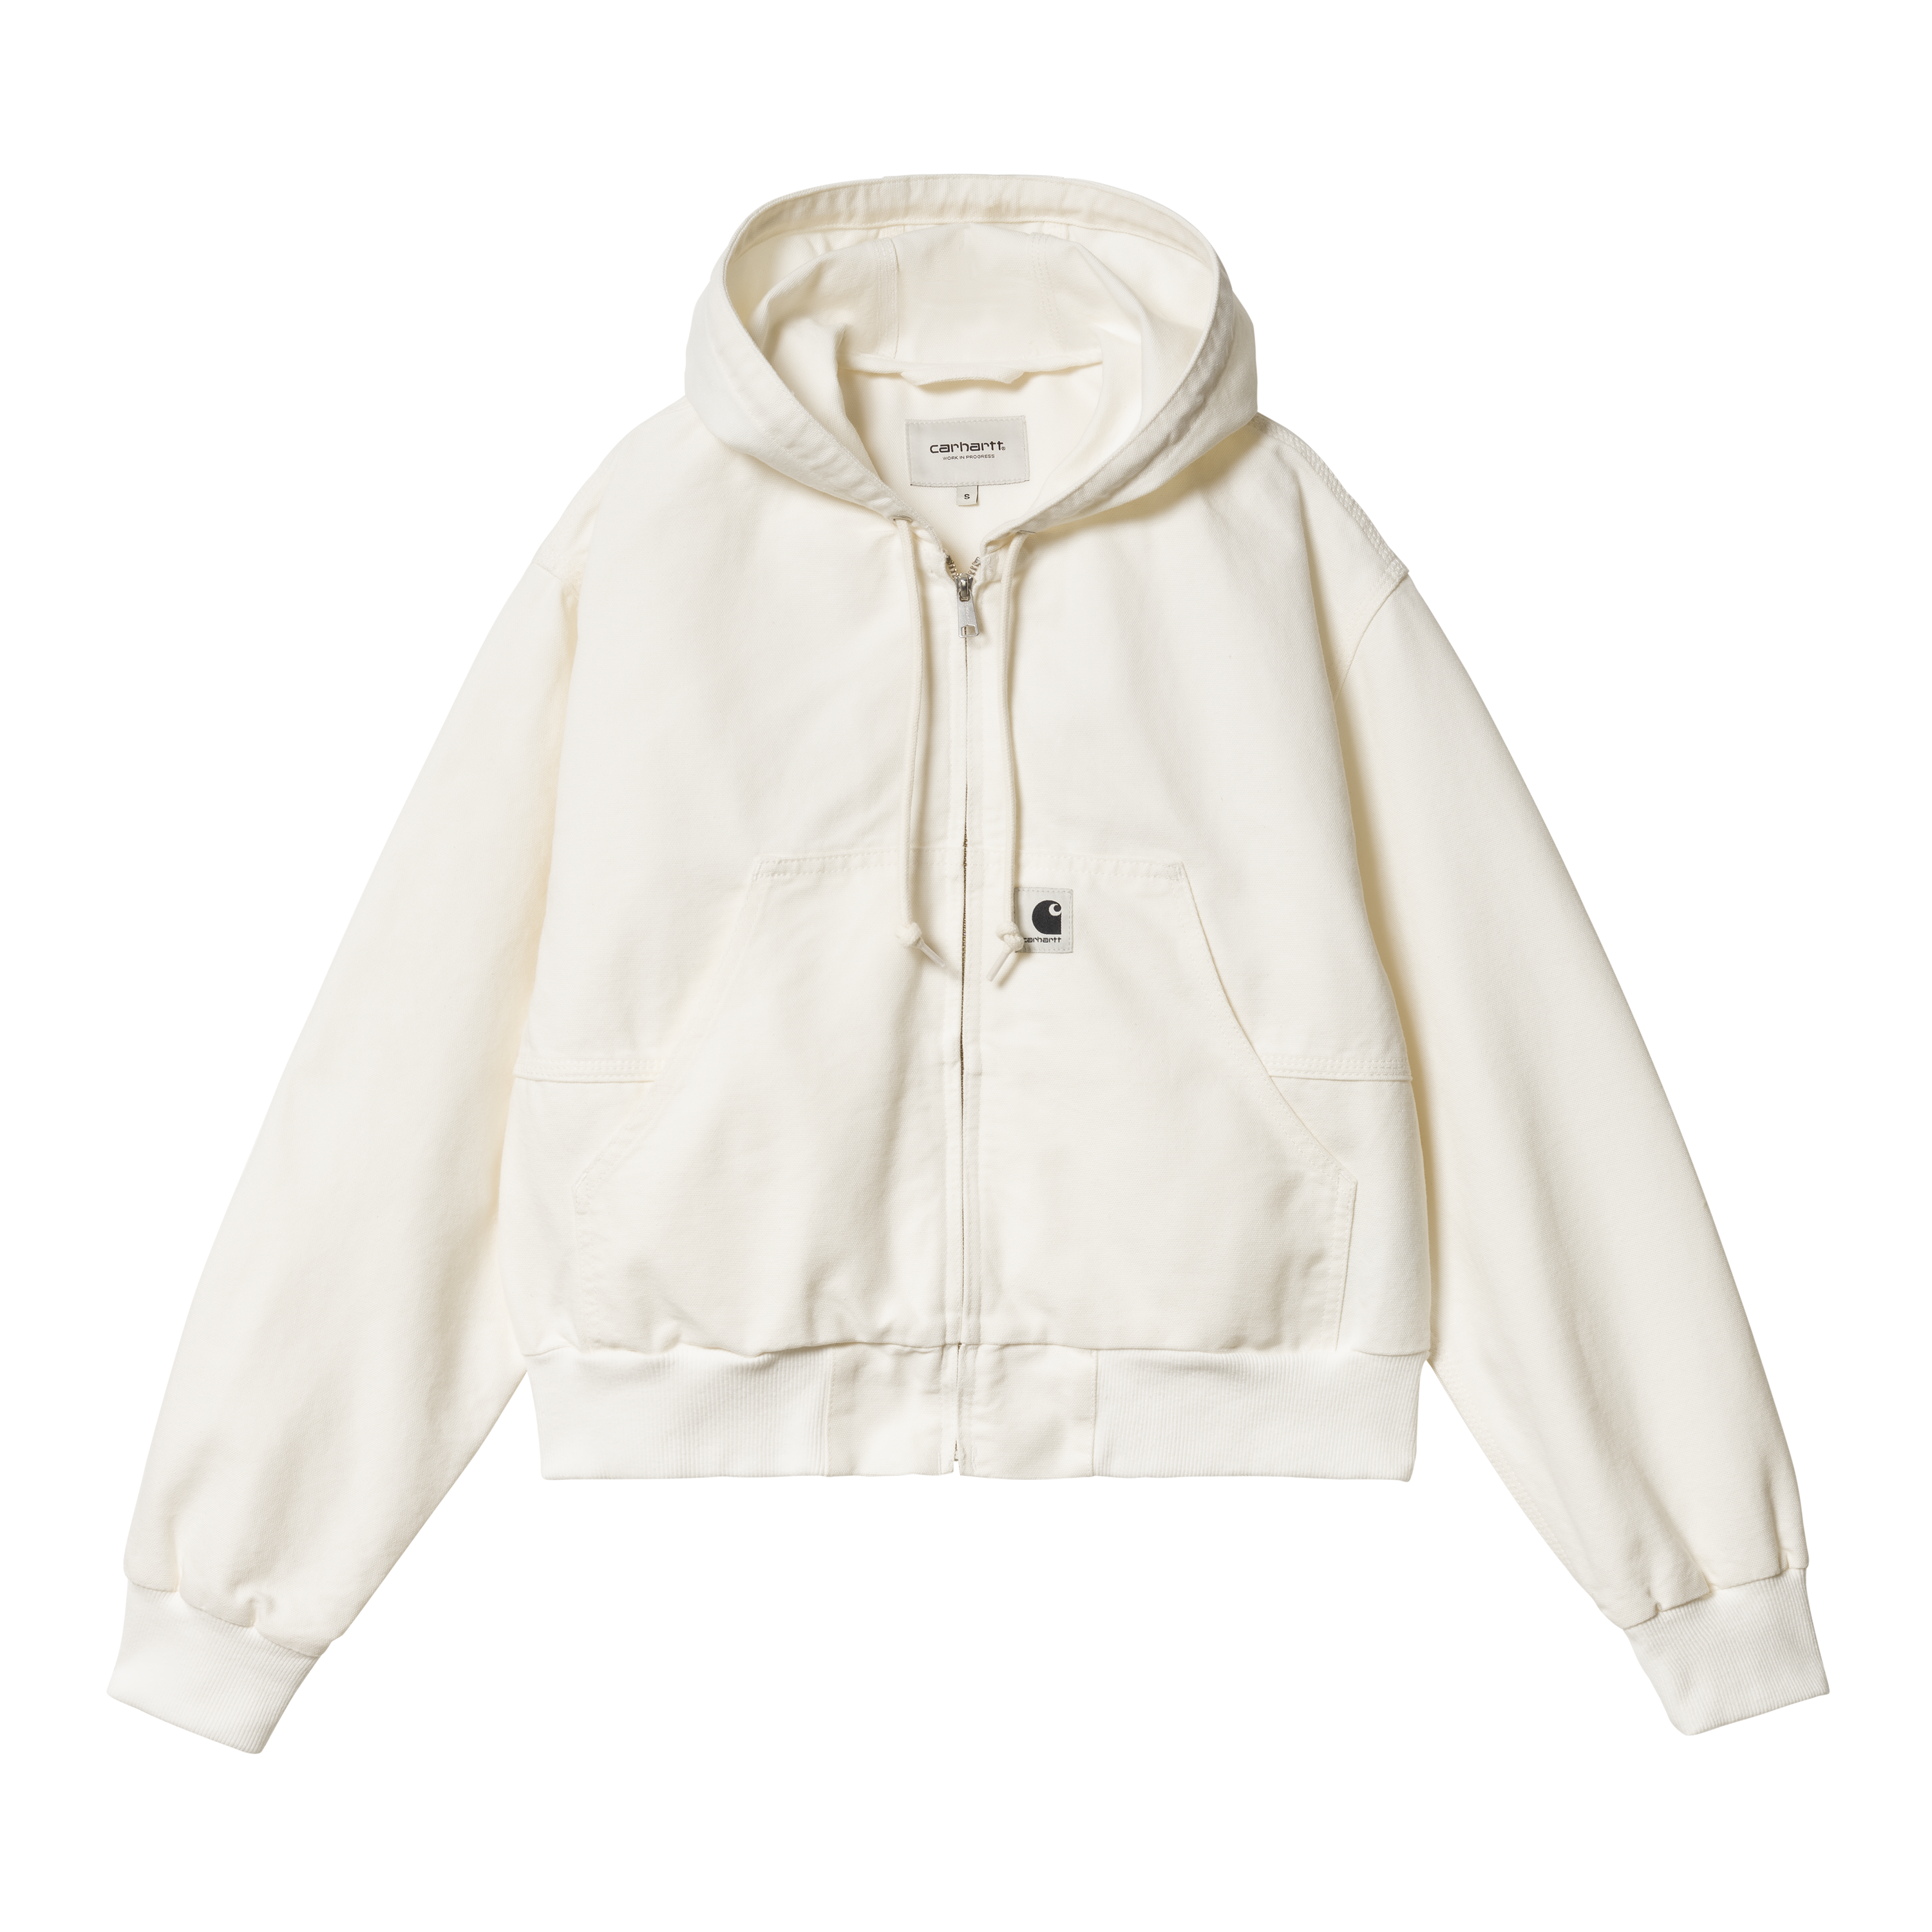 Carhartt WIP Women’s Amherst Jacket in Bianco